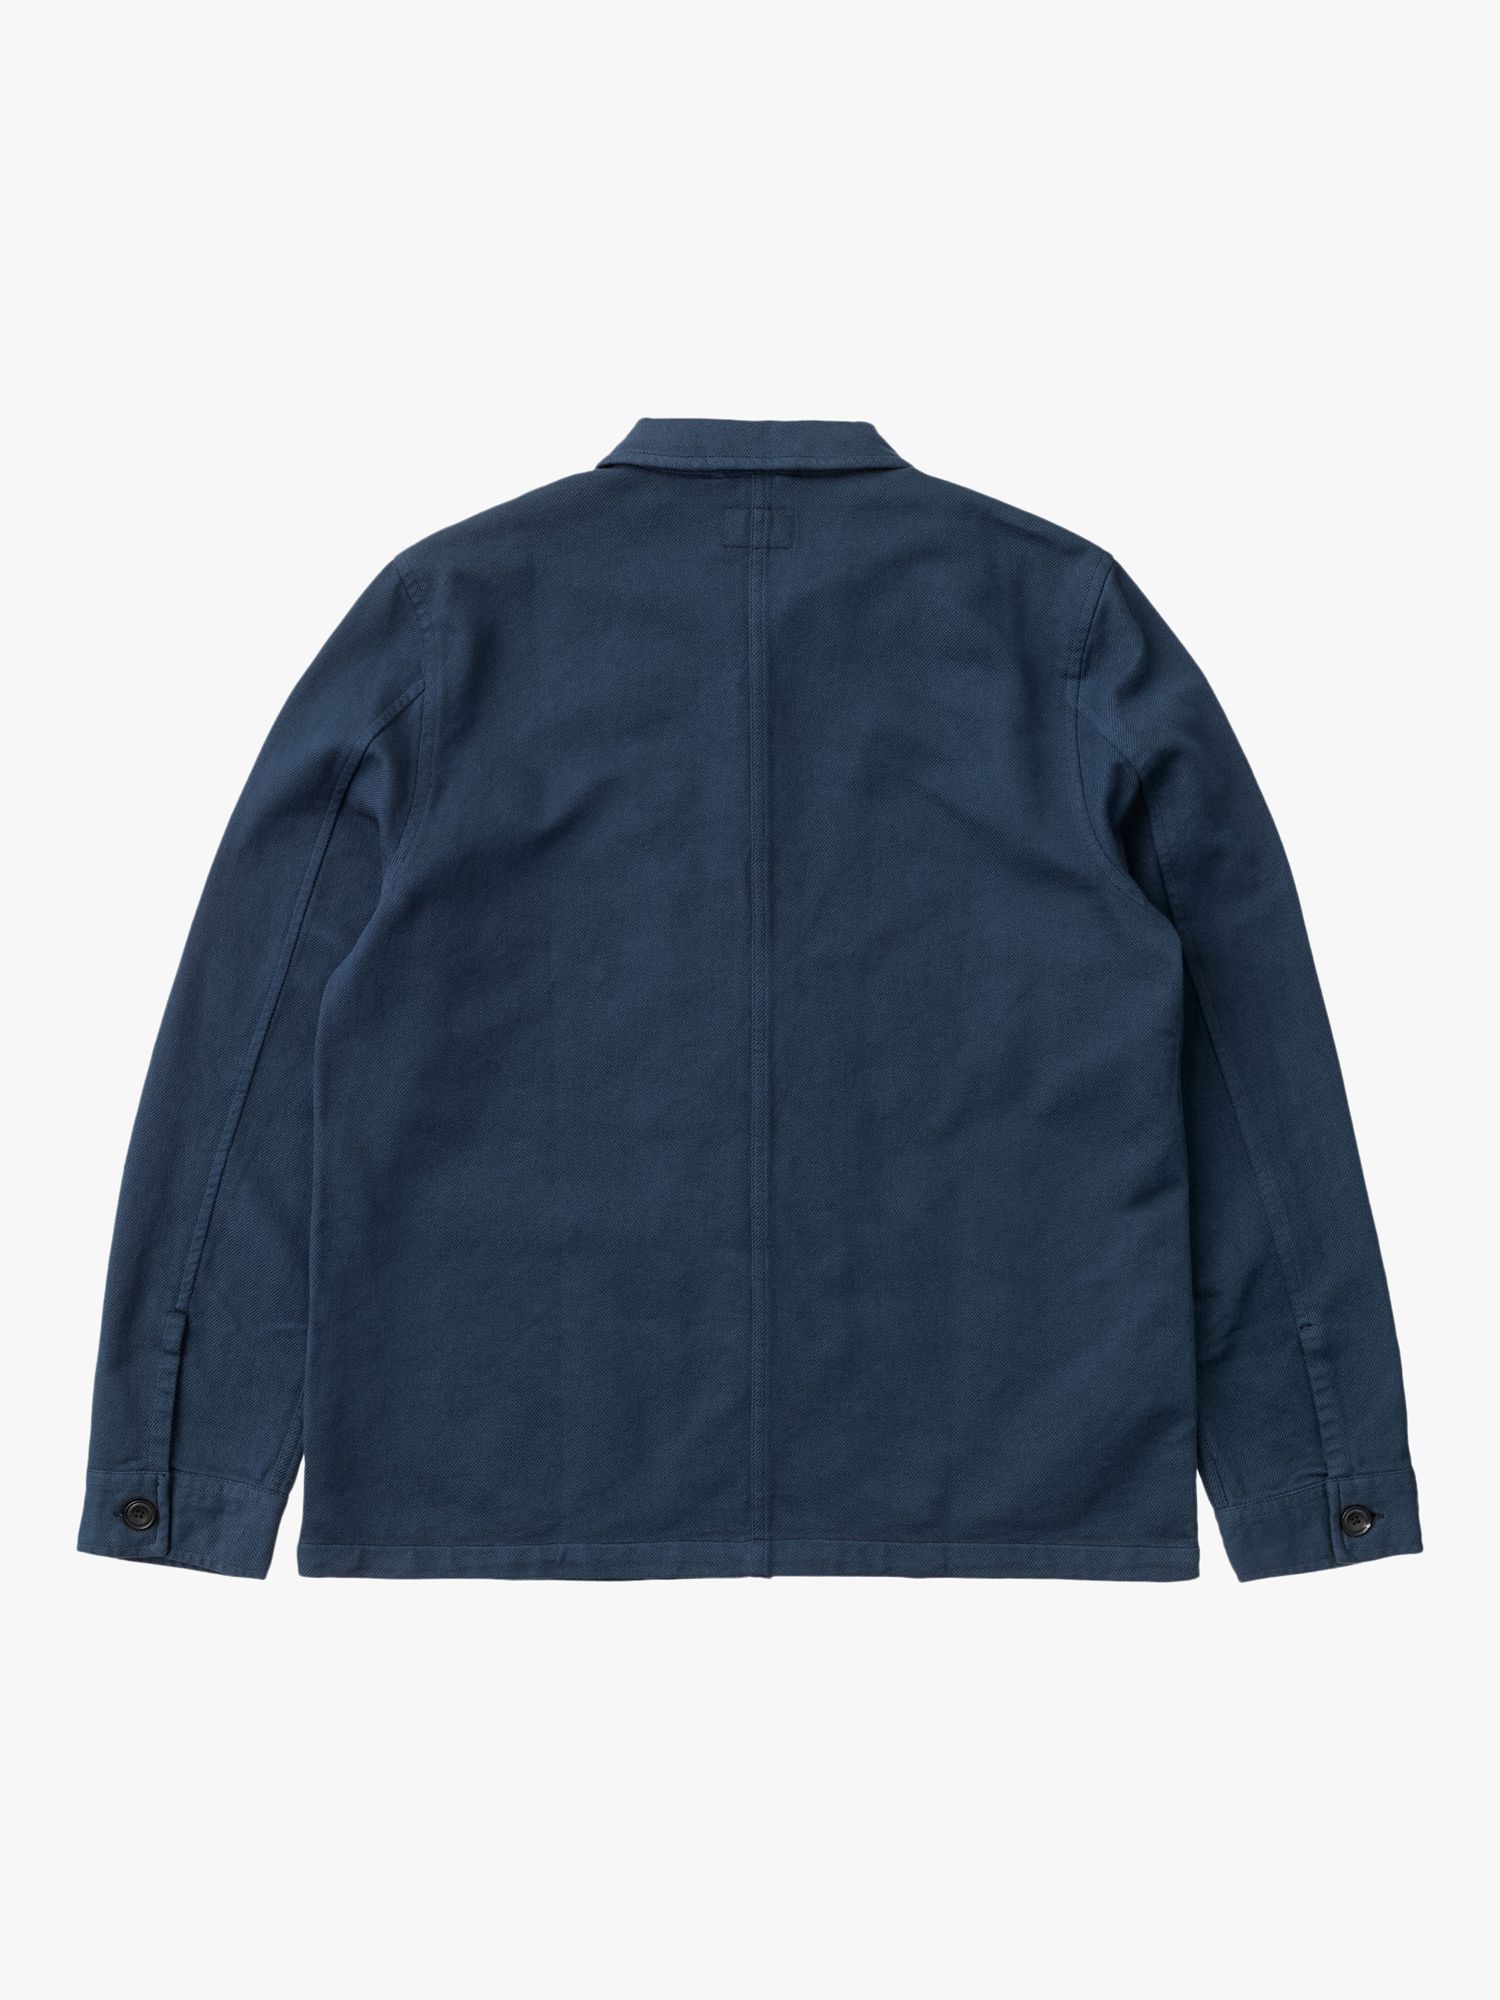 Nudie Jeans Barney Worker Jacket, Denim Blue